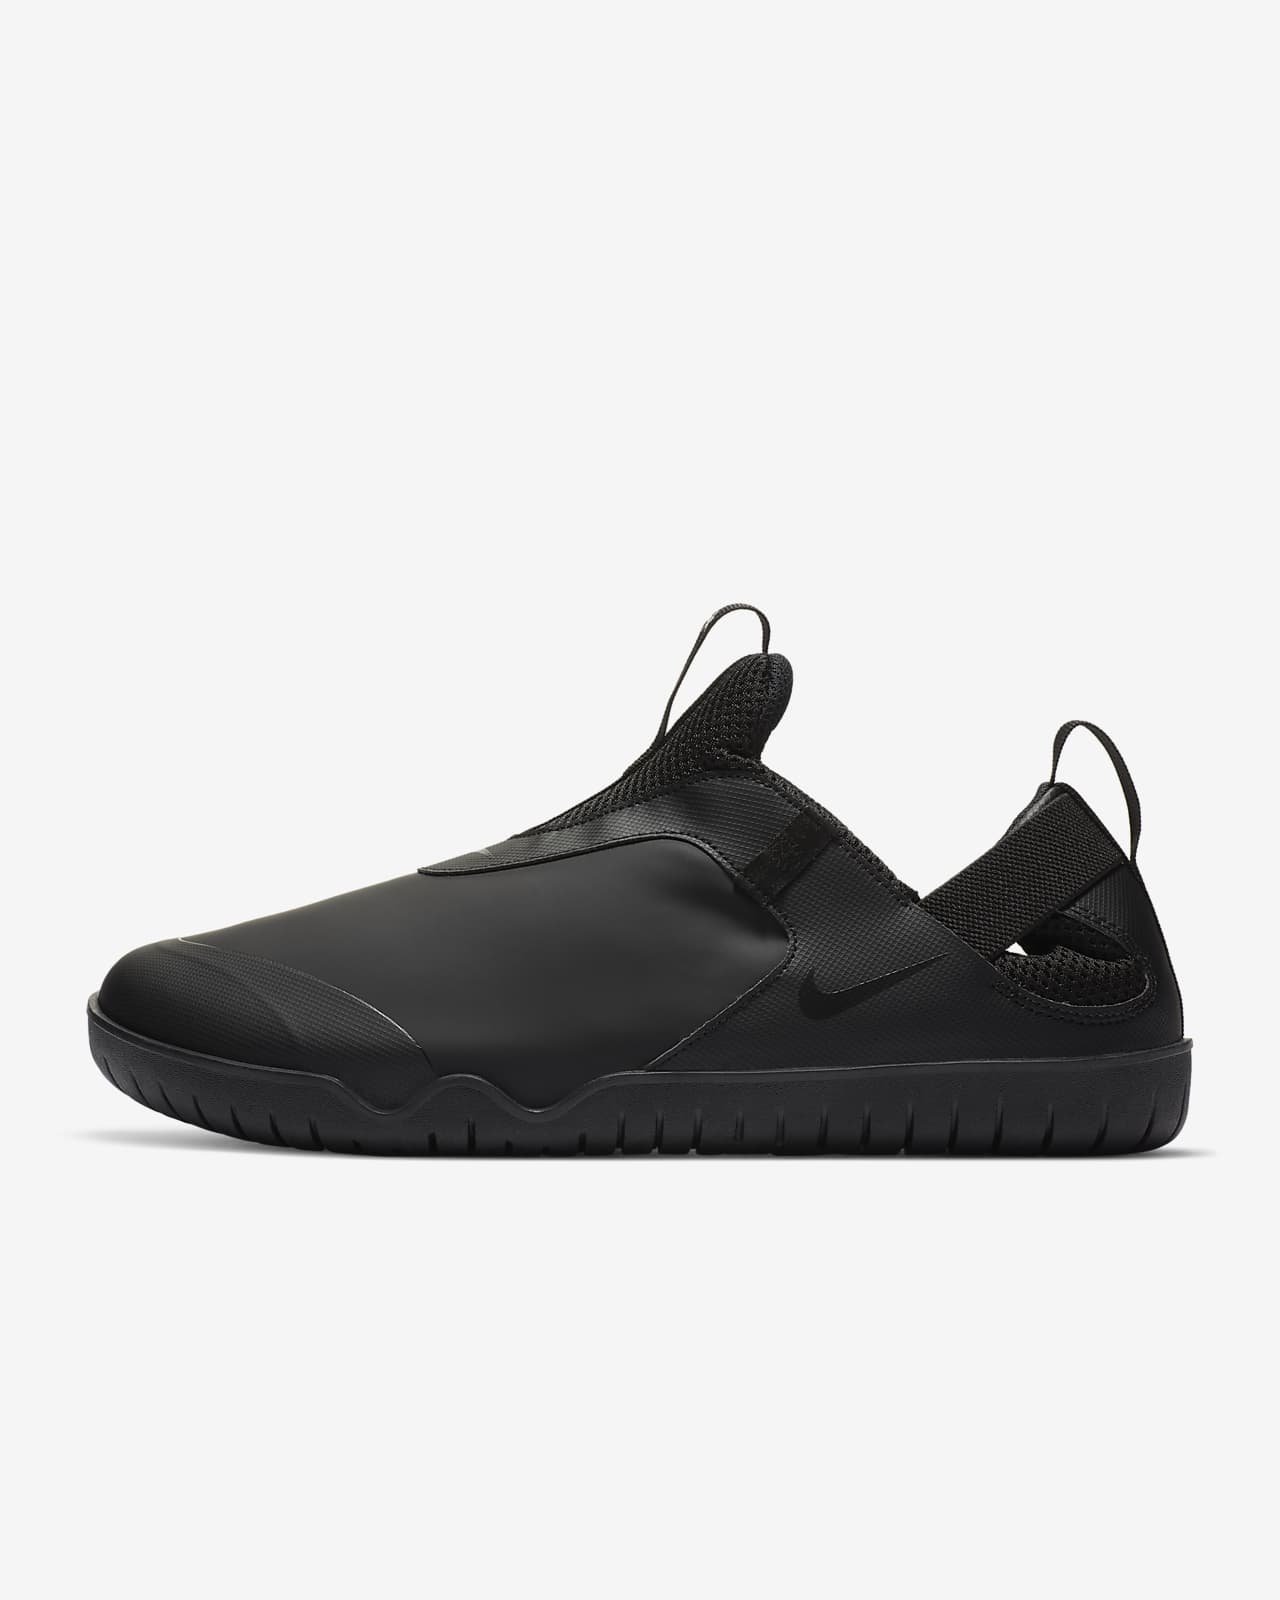 black on black slip on shoes